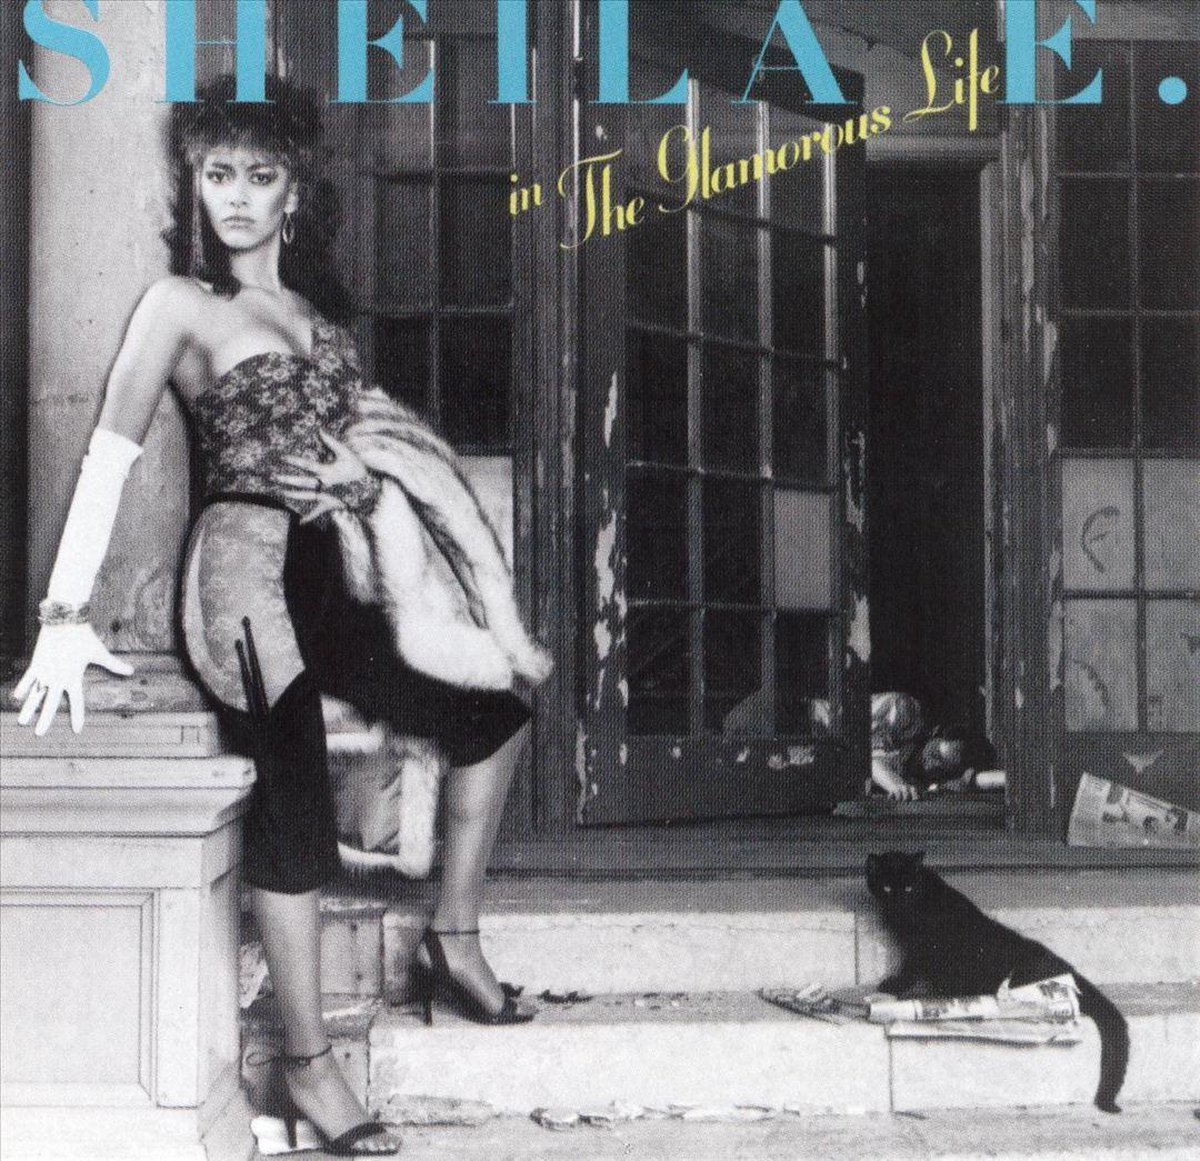 Sexy albumhoes Sheila E – The Glamourous Life (1984)